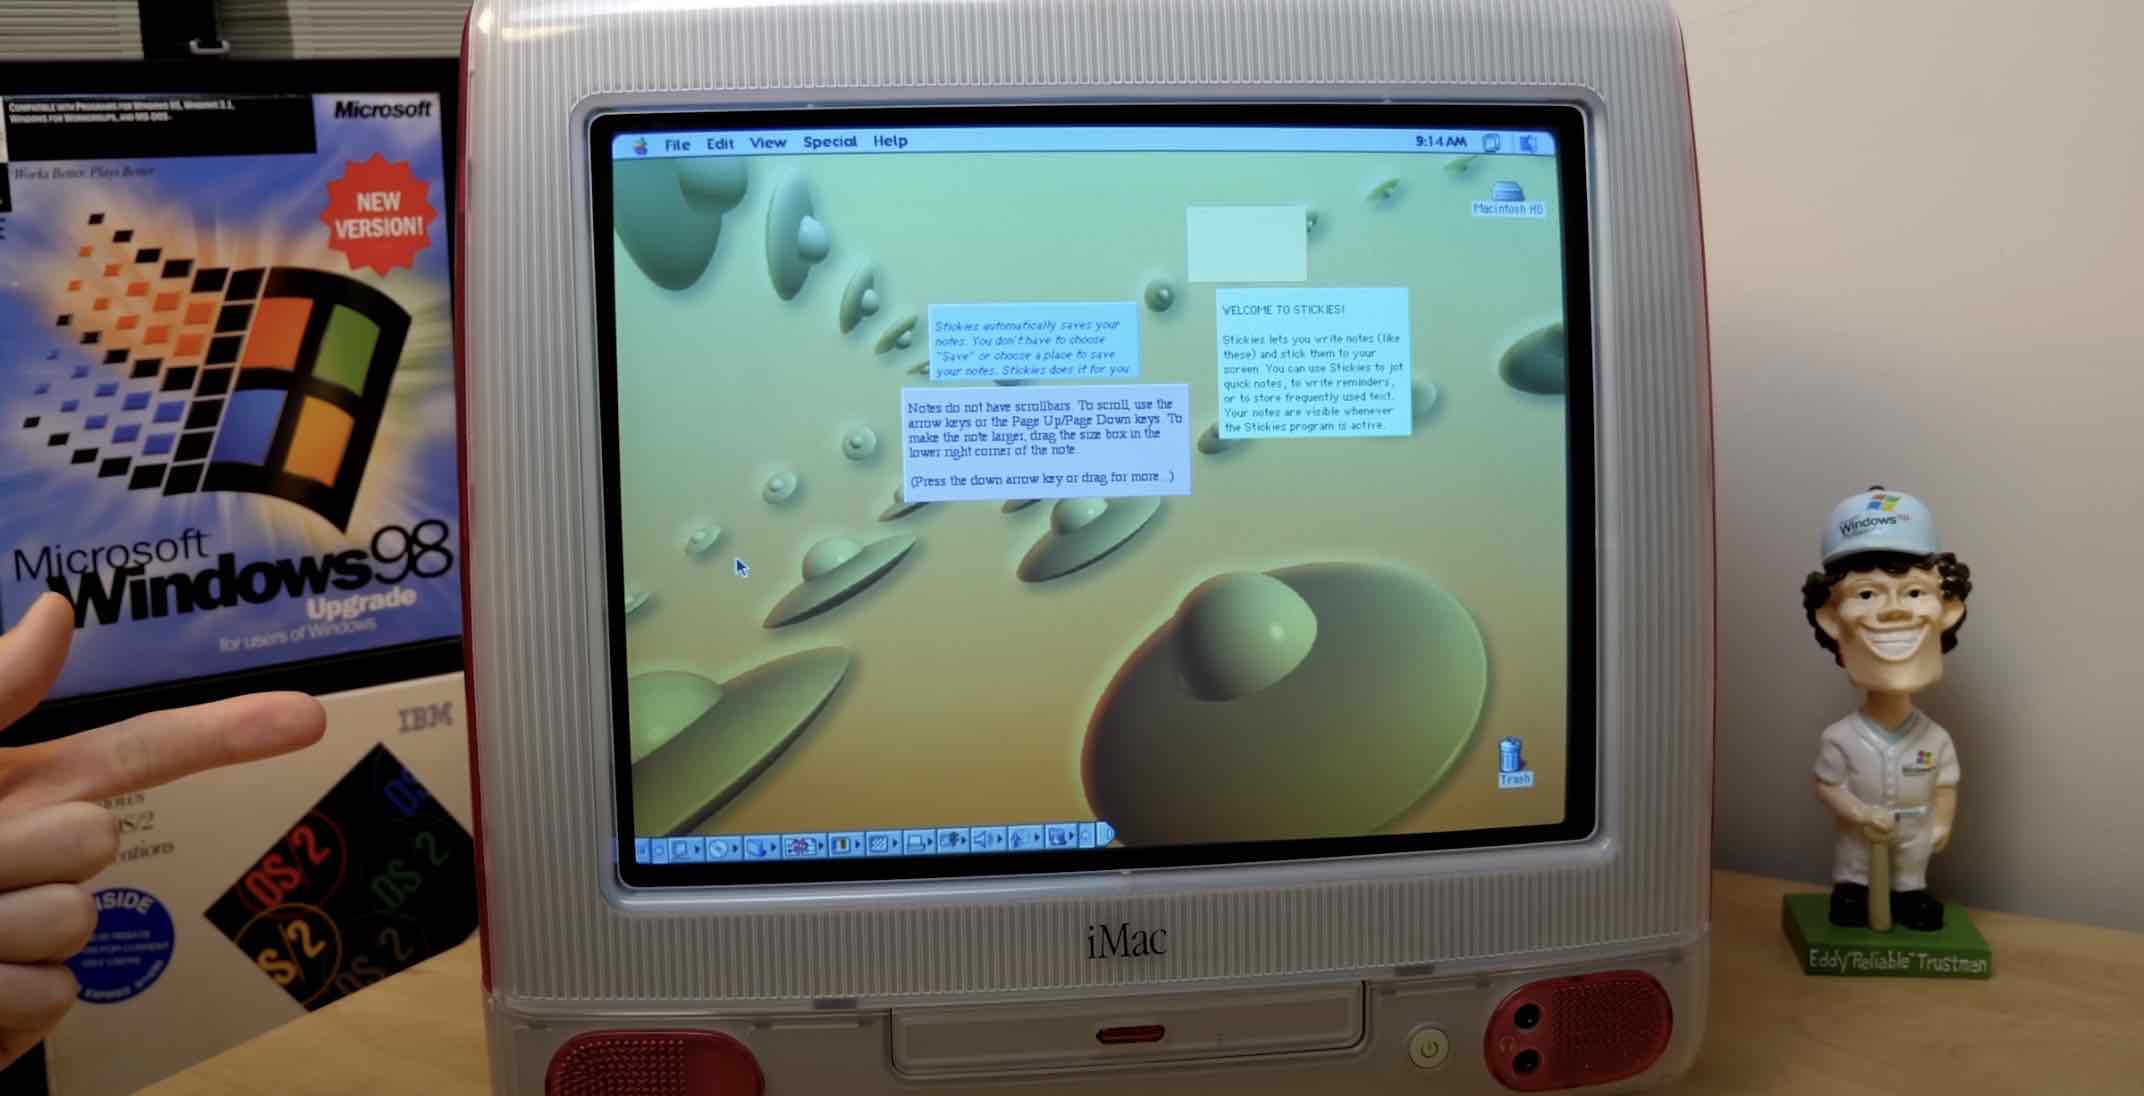 W sieci pojawiło się wideo przedstawiające iMaca z ekranem dotykowym! ciekawostki użytkowanie, technologia dotykowa, sprzęt, spekulacje, przyszłość, prototypy, Oprogramowanie, Mac, koncepcja, komputery, interakcja, iMac, ekran dotykowy, ekosystem, Apple  W sieci pojawiło się ciekawe wideo na którym możemy zobaczyć  iMaca z funkcją ekranu dotykowego. Autorem poniższego nagrania jest Michael MJD. imac 2